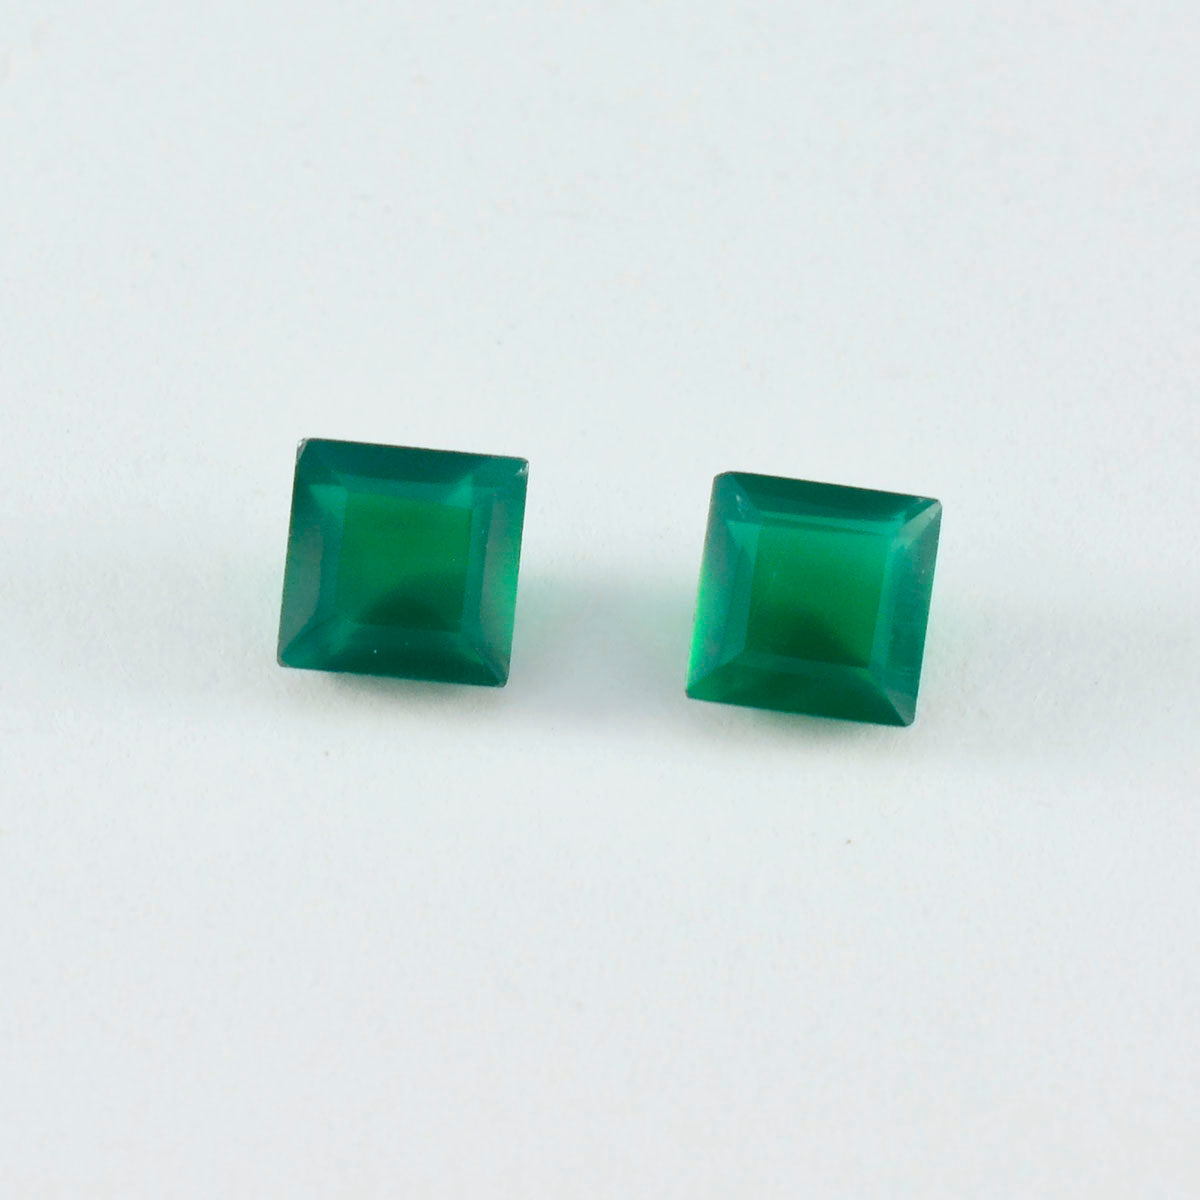 riyogems 1pc véritable onyx vert à facettes 9x9 mm forme carrée pierre précieuse de qualité étonnante